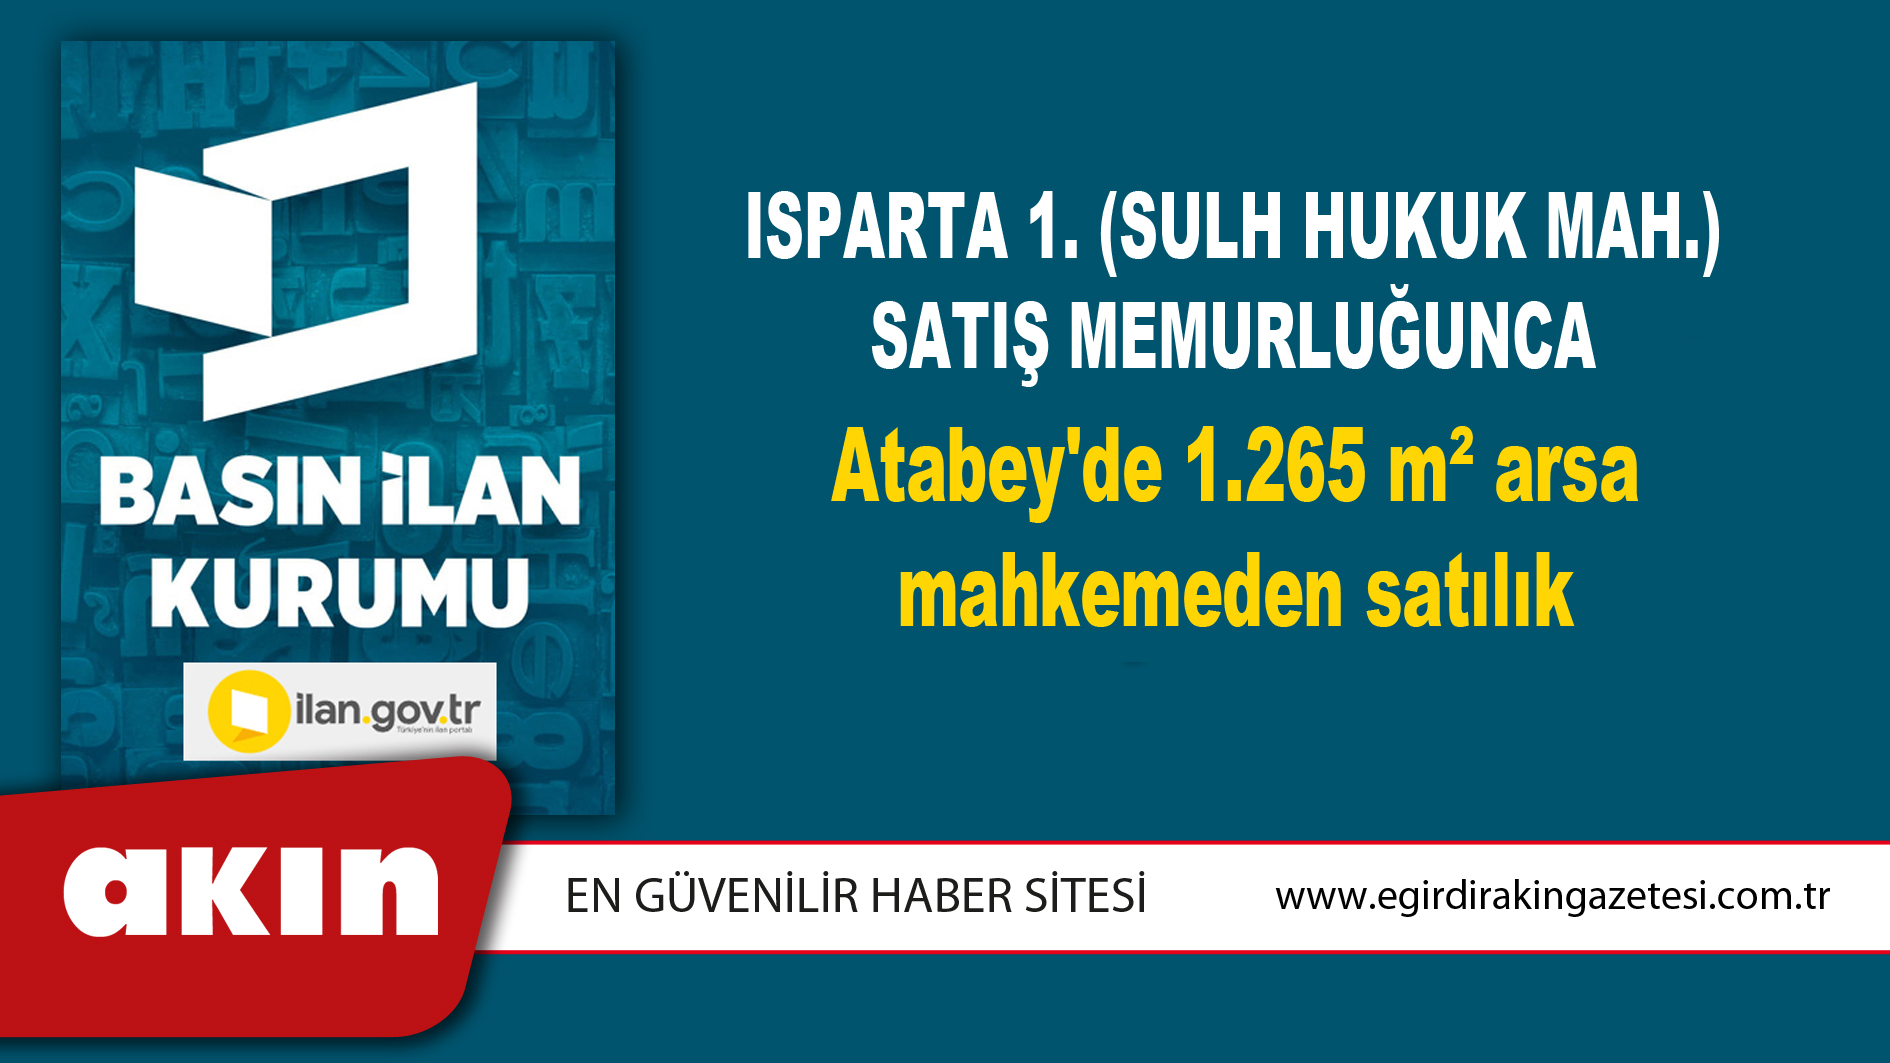 Isparta 1. (Sulh Hukuk Mah.) Satış Memurluğunca Atabey'de 1.265 m² arsa mahkemeden satılık